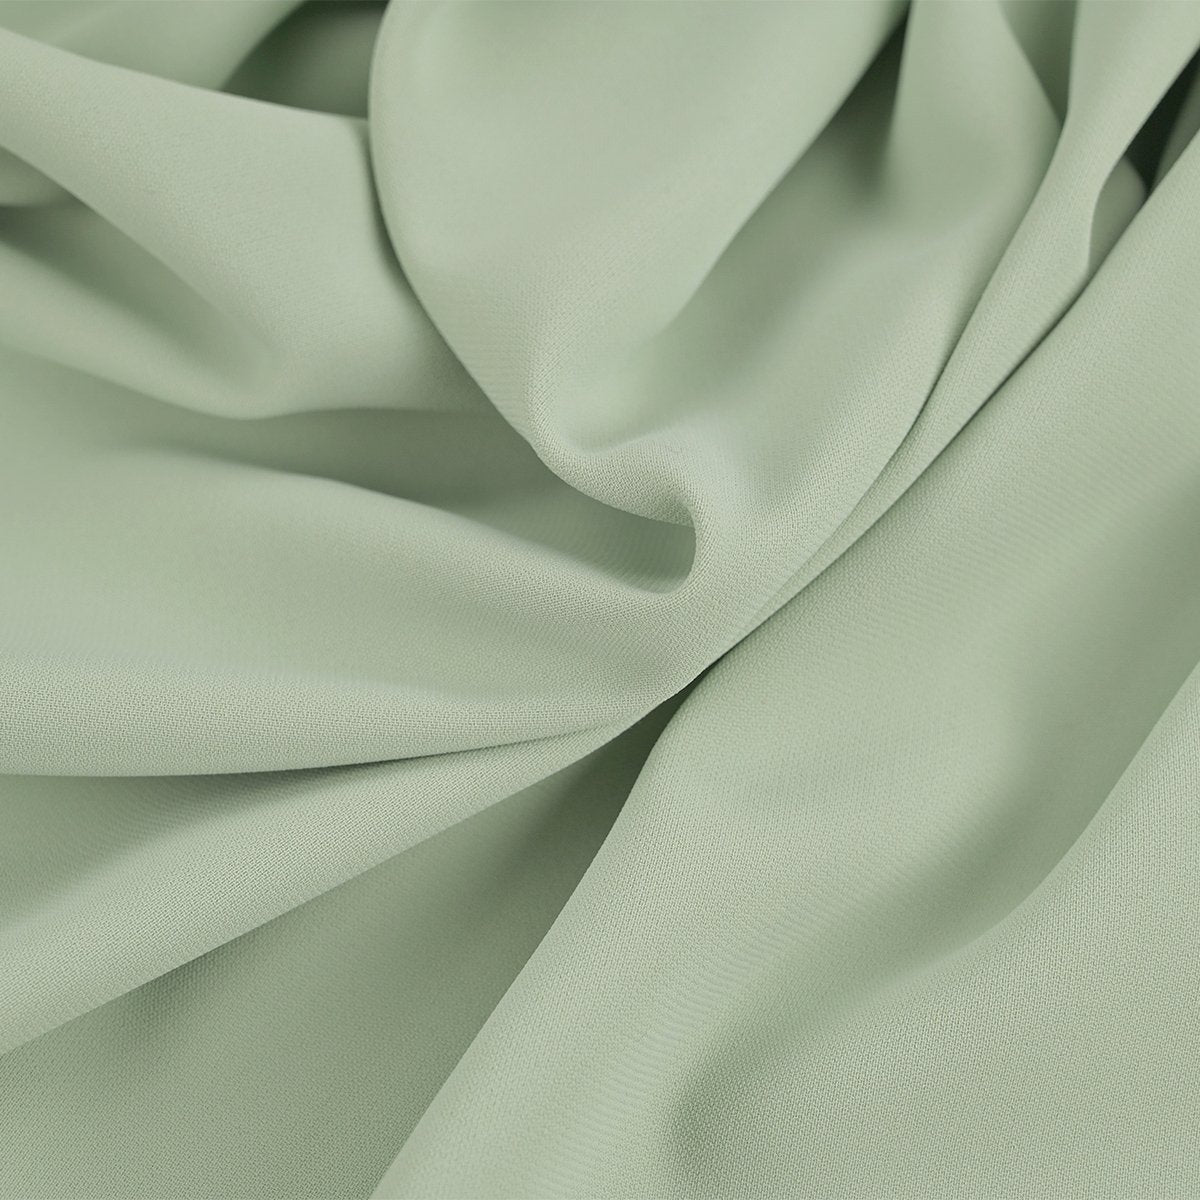 Pistachio Light Suiting Fabric 4181